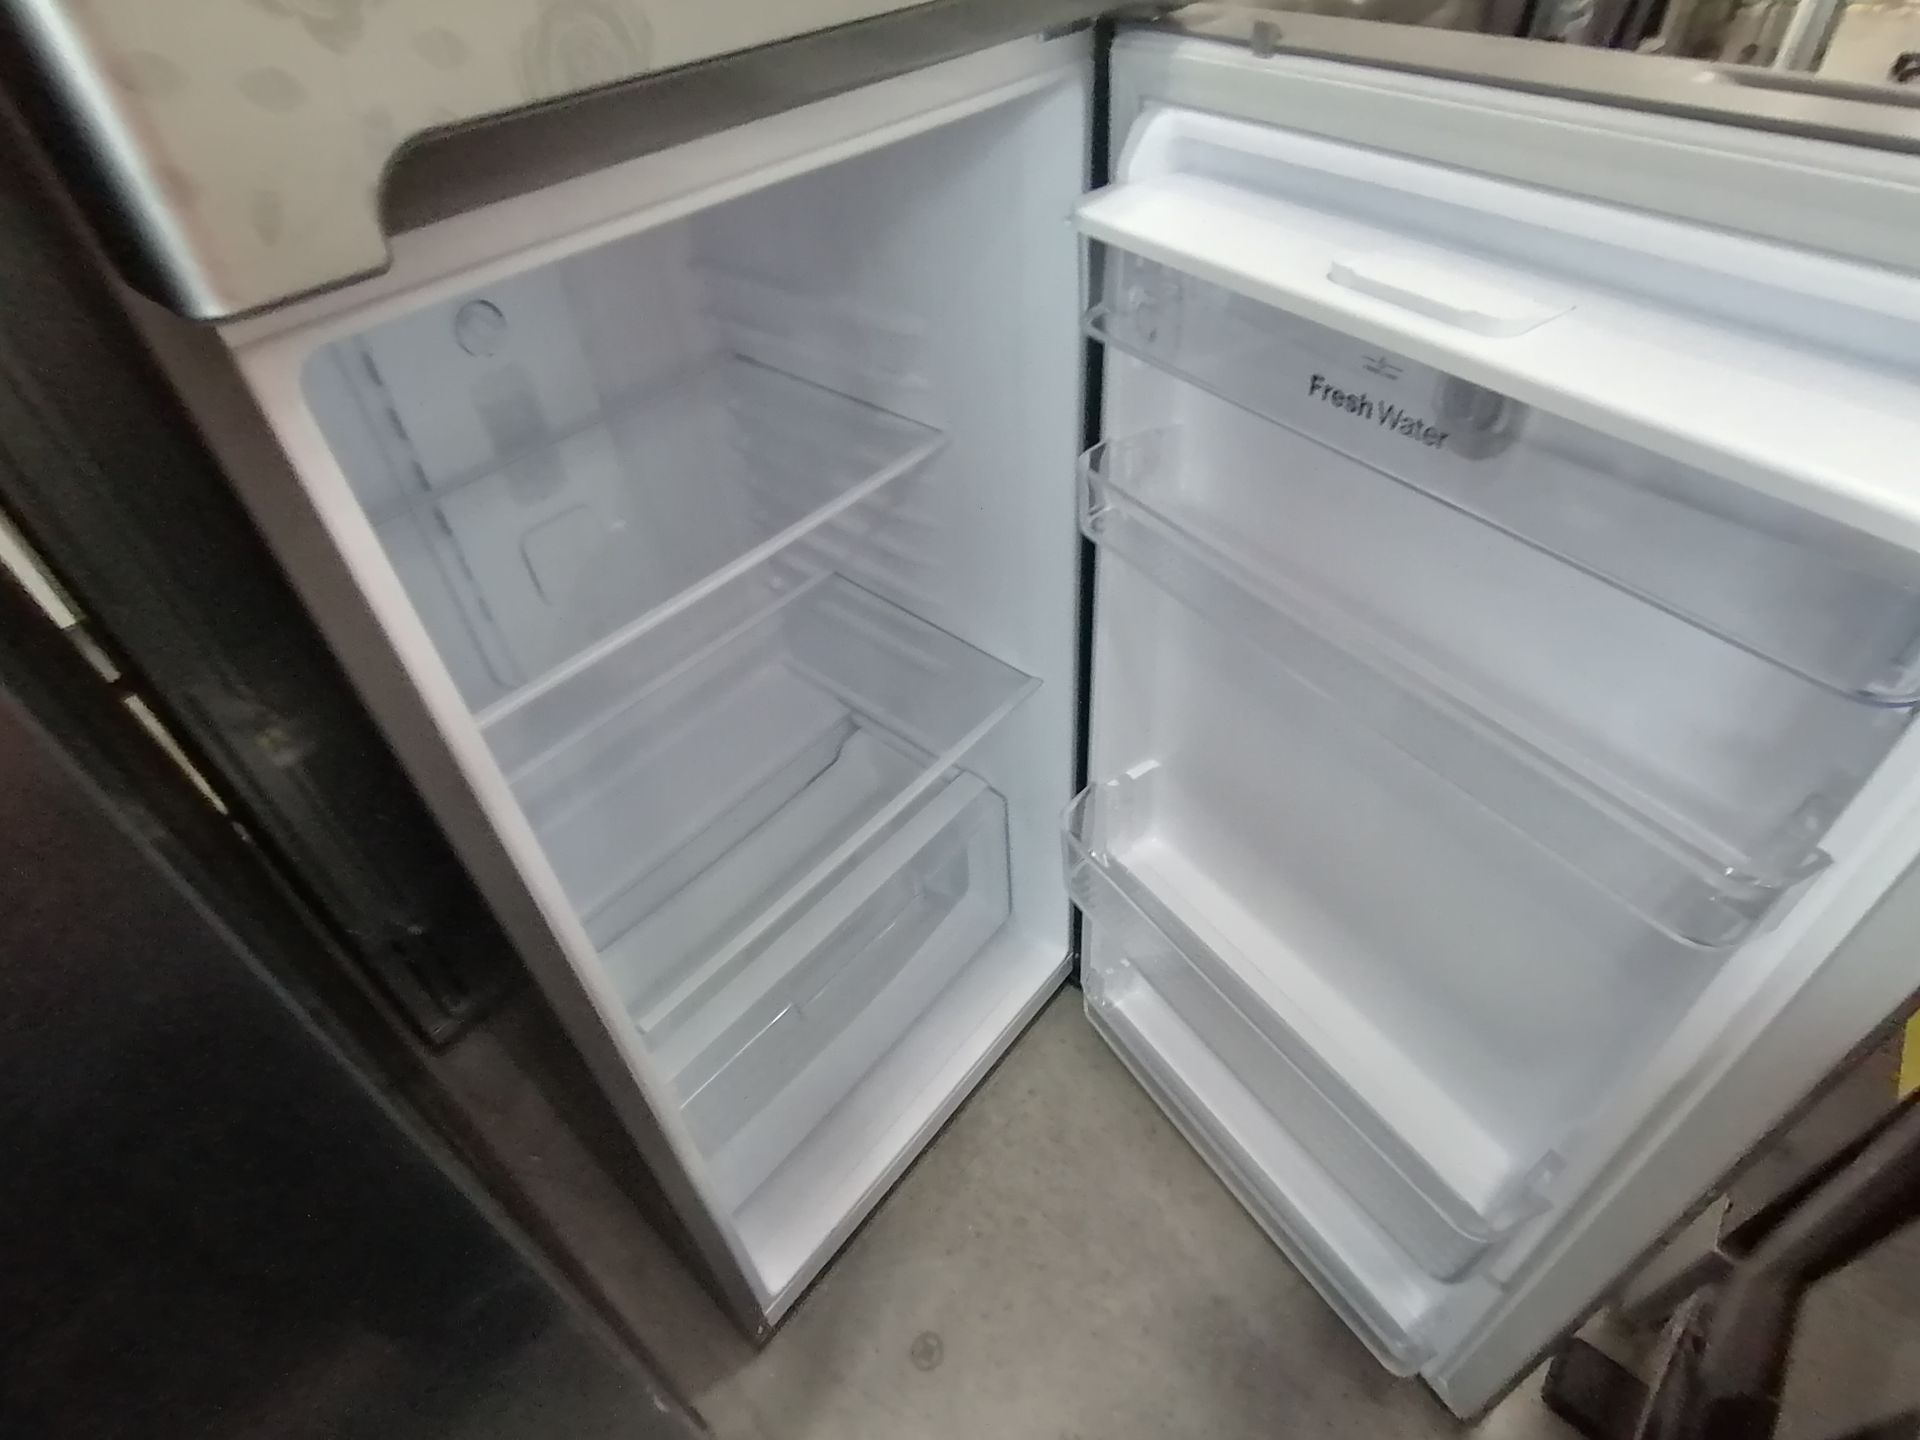 1 Refrigerador Marca Samsung, Modelo RS28T5B00B1, Serie 0B2V4BBT300531L, Color Gris, Golpeado, Favo - Image 13 of 17